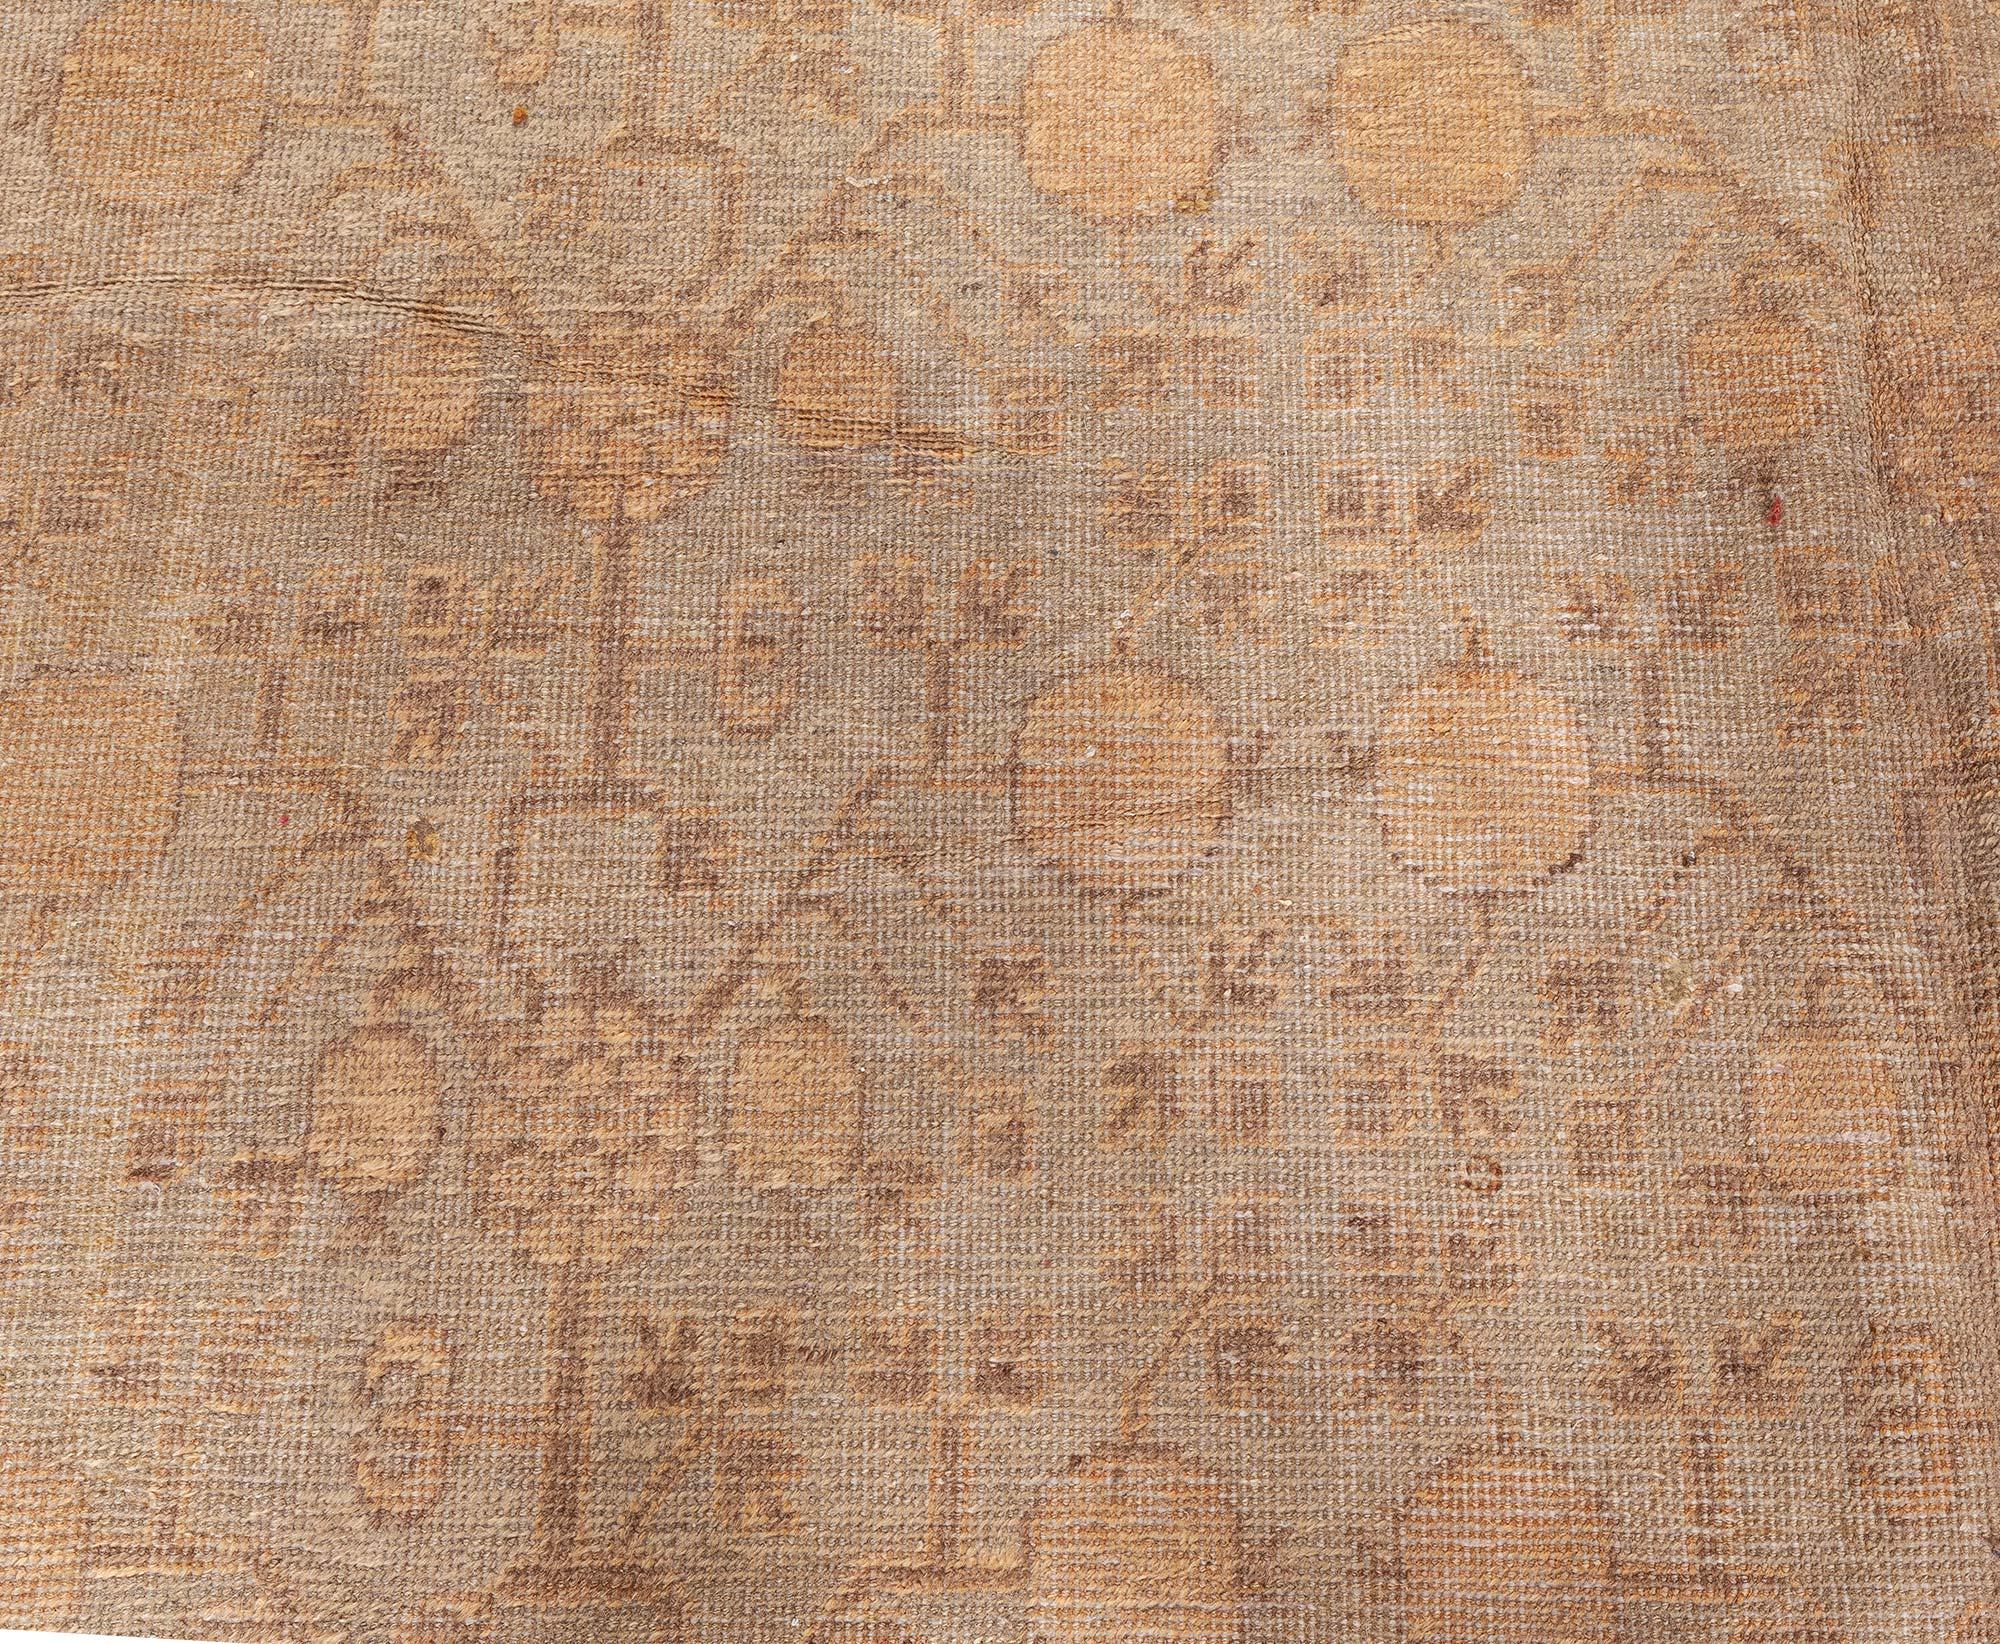 Einzigartiger handgefertigter Samarkand-Wollteppich im Vintage-Stil.
Größe: 7'8